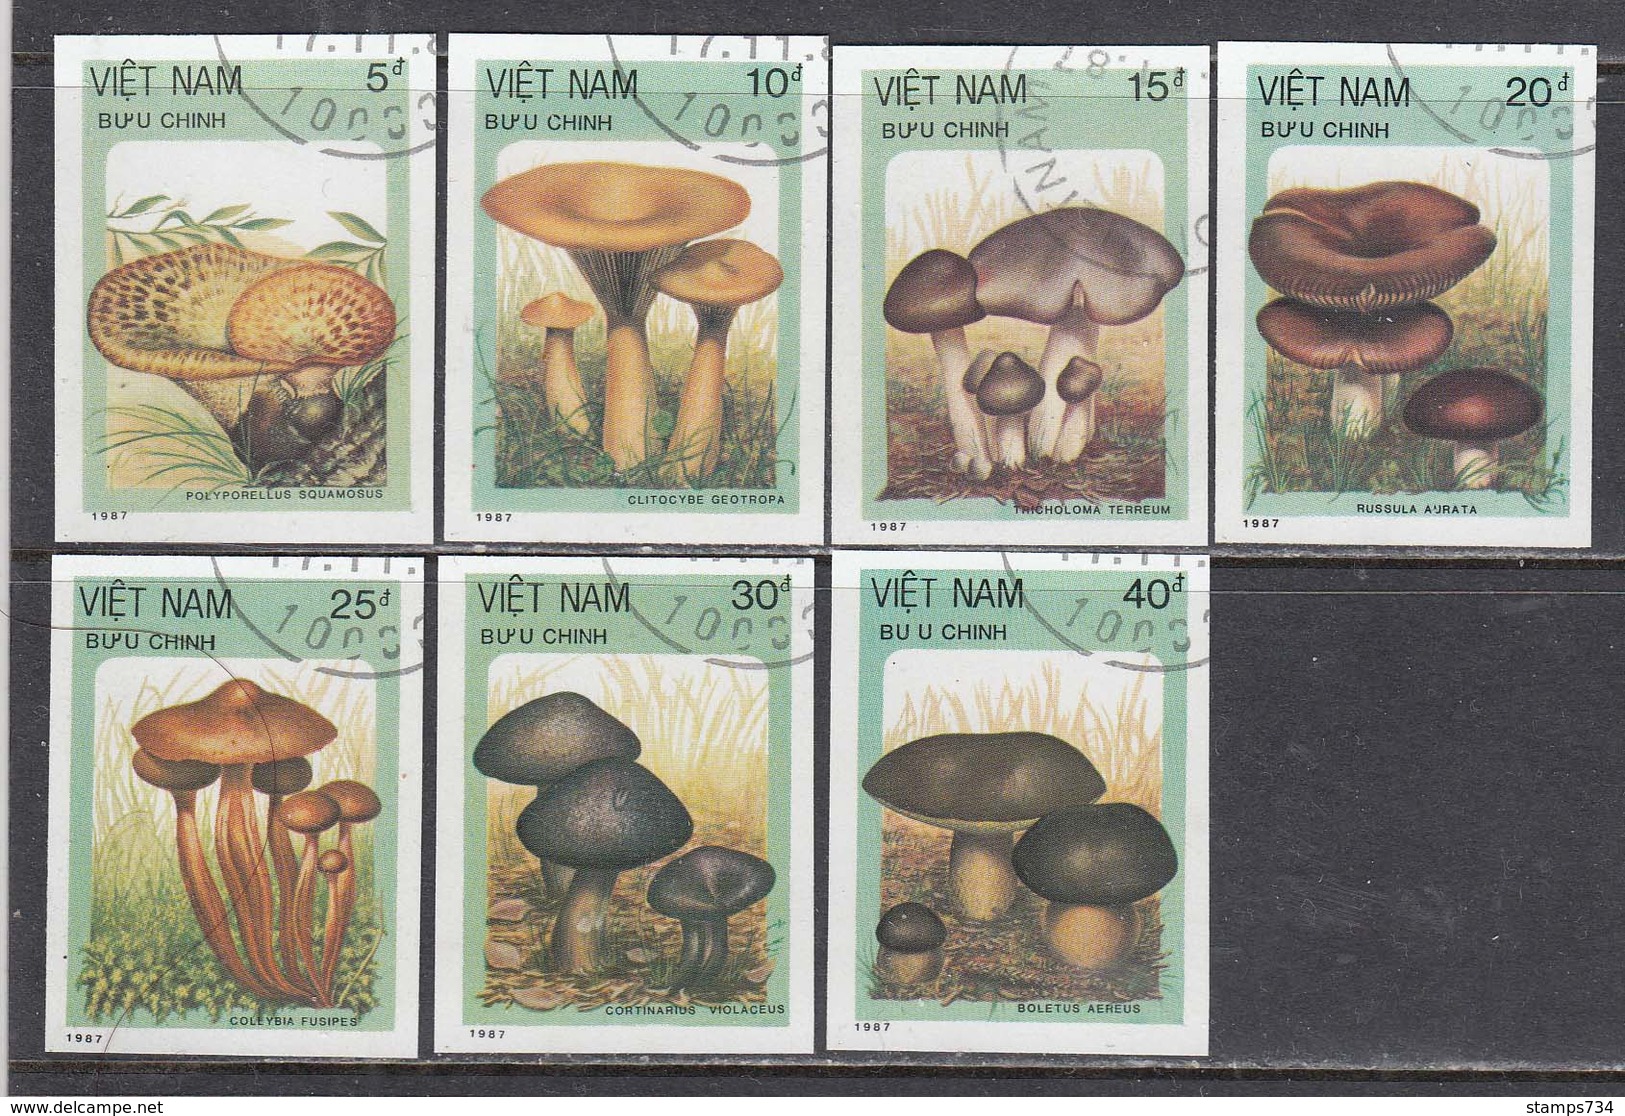 Vietnam 1987 - Mushrooms, Imperforated, Canceled - Vietnam